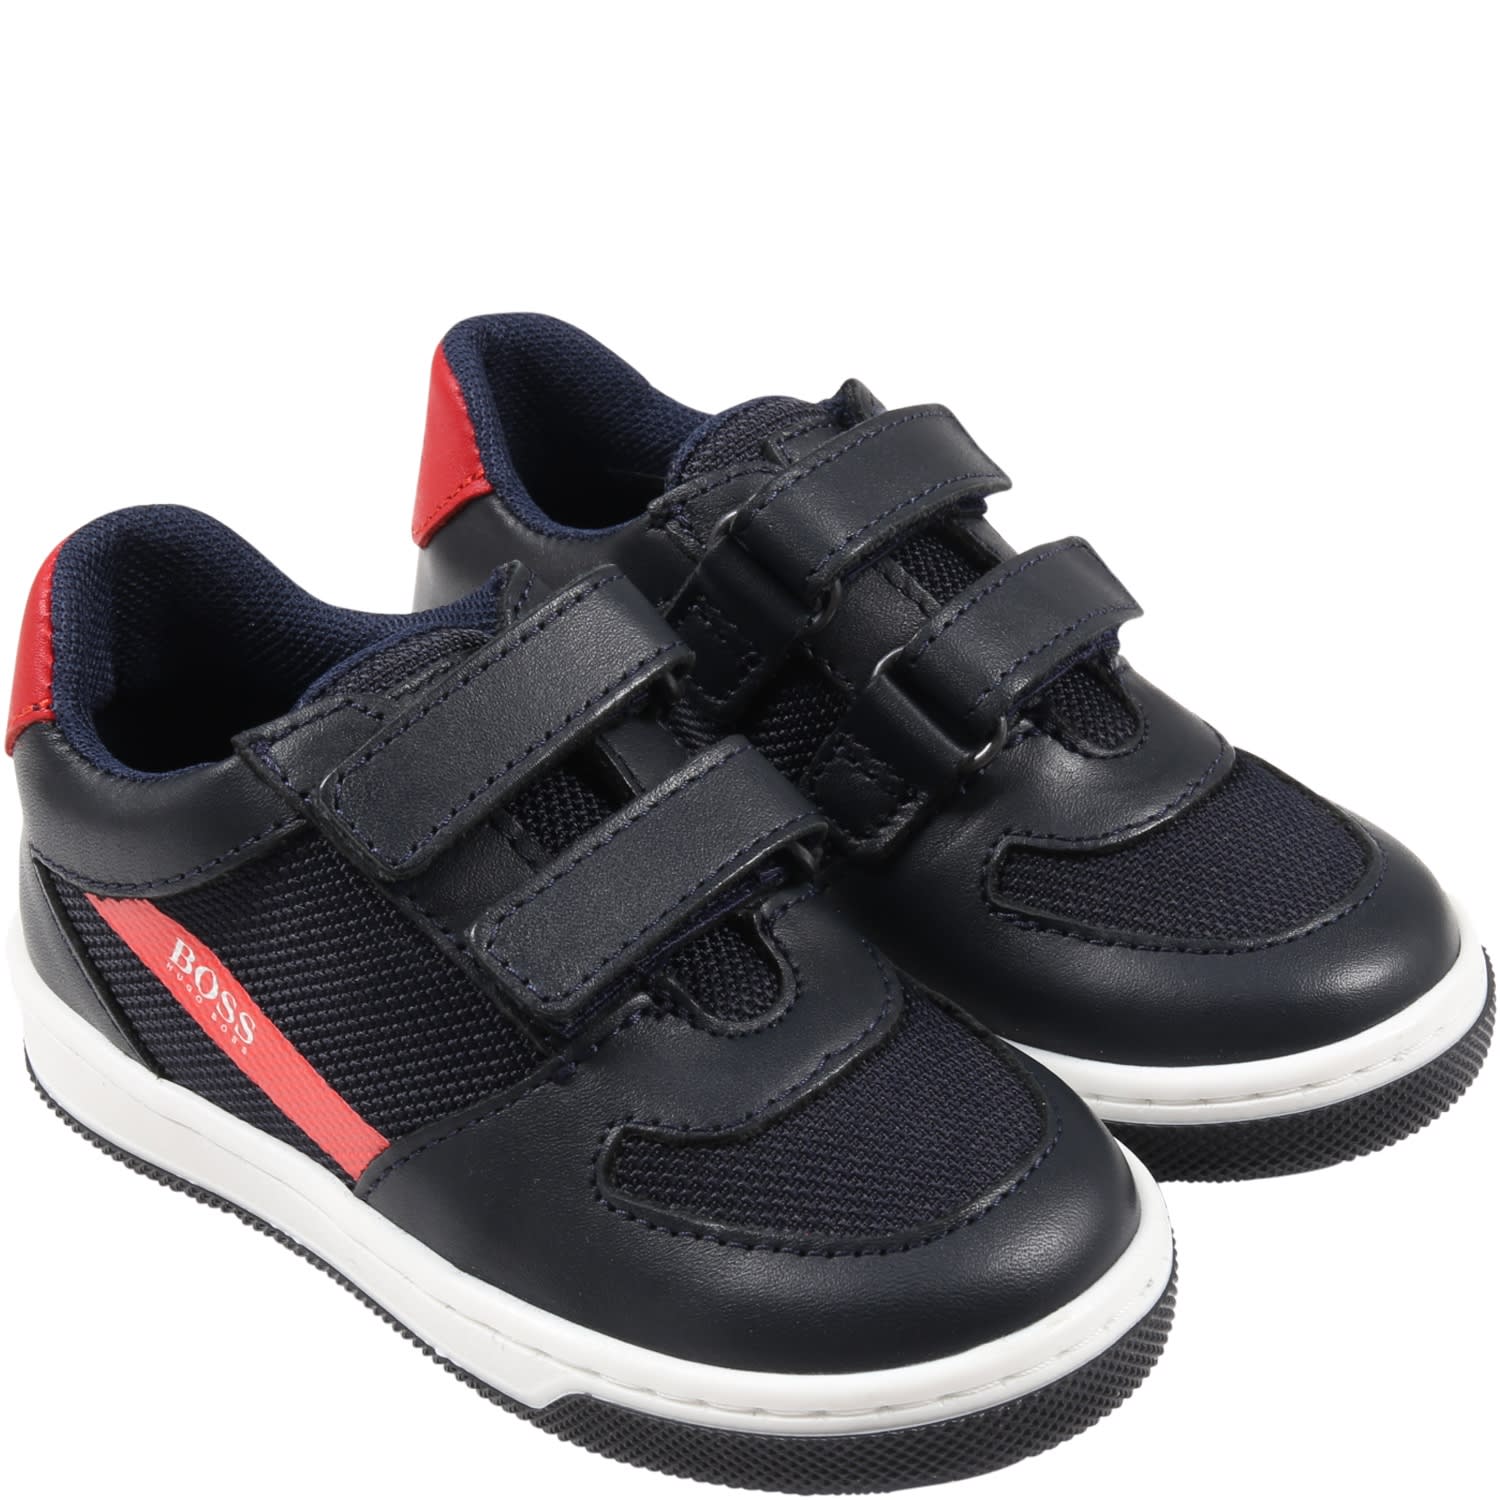 Hugo Boss Black Neon Baby Sneaker - Tassel Children Shoes